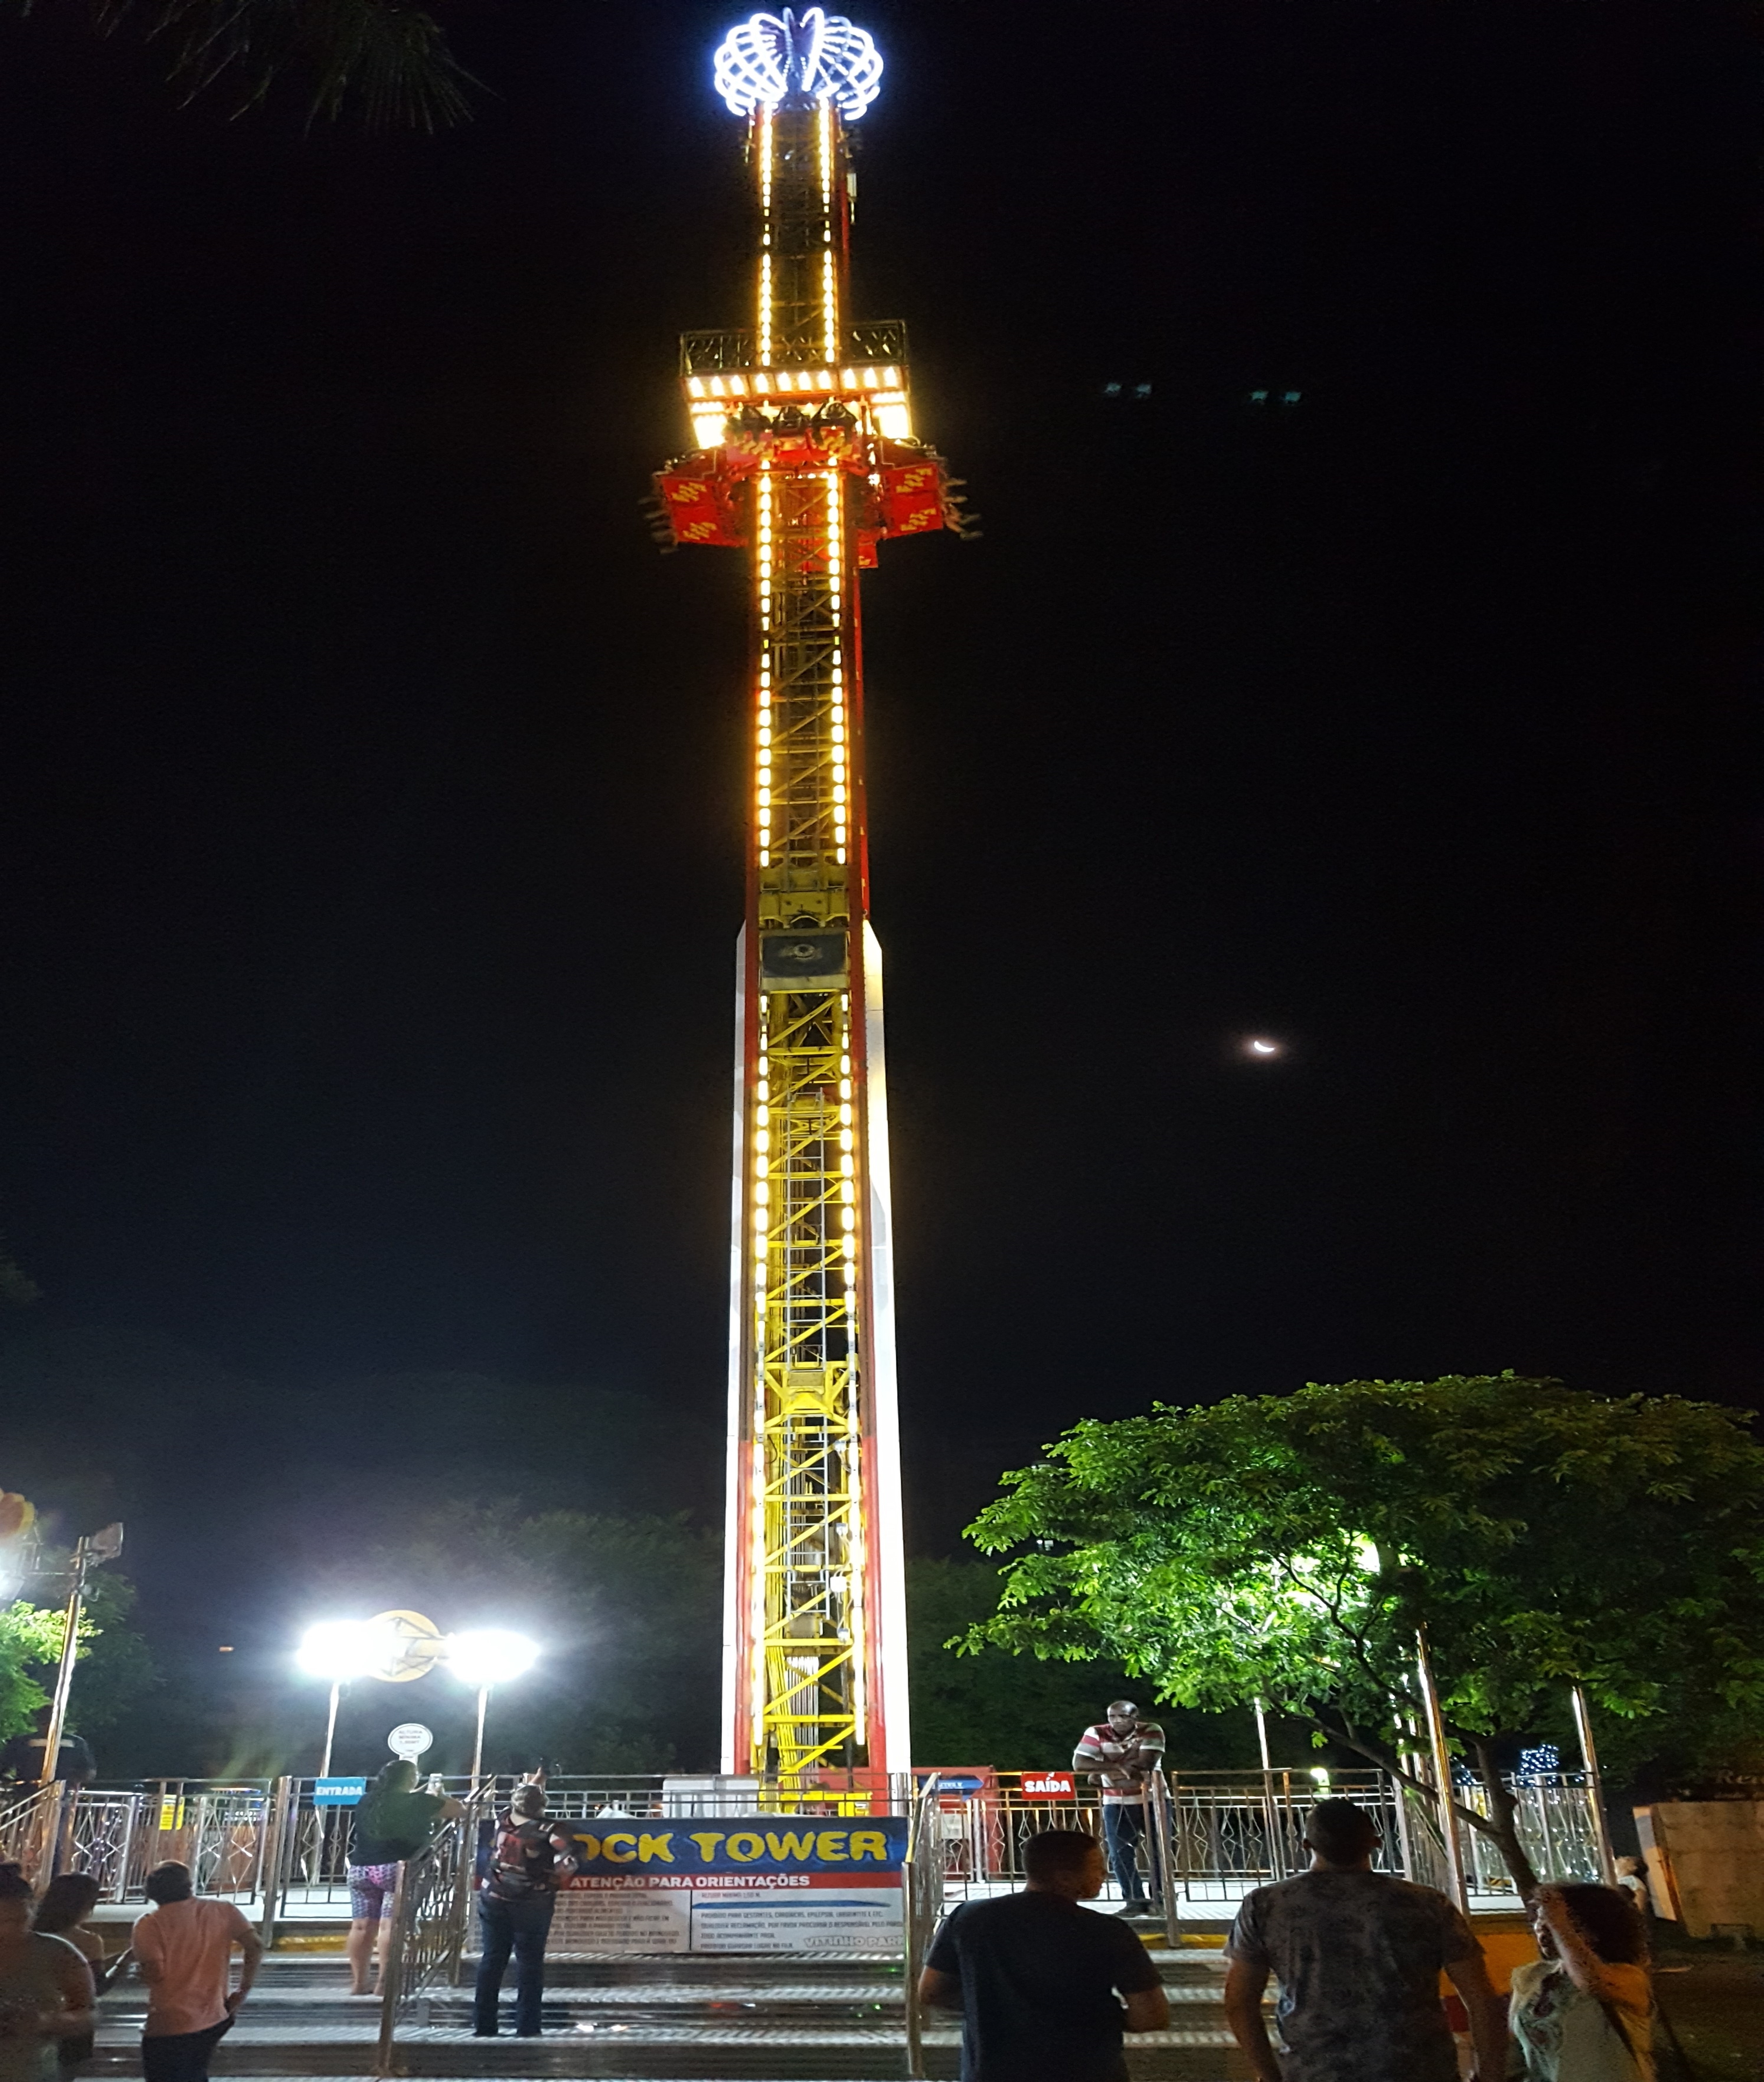 Roda gigante, Big Tower começam funcionar na Maringá Encantada